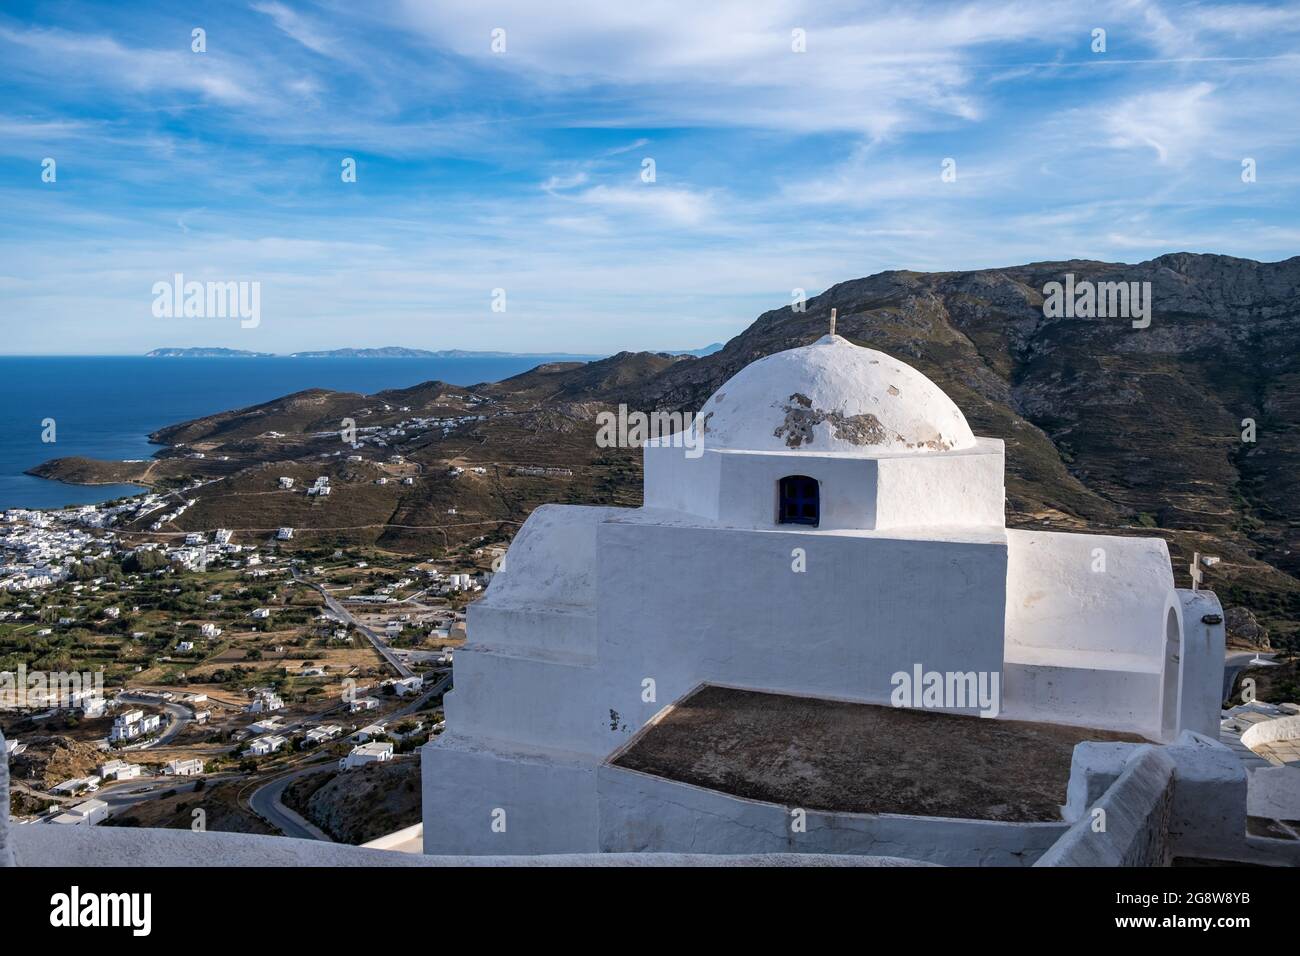 Kirche orthodoxe, kleine weiß getünchte alte Kapelle, kletterte auf felsigen Berg bei Serifos Insel über Chora, Kykladen Griechenland. Ruhiges Agean-Meer und blauer Himmel Stockfoto